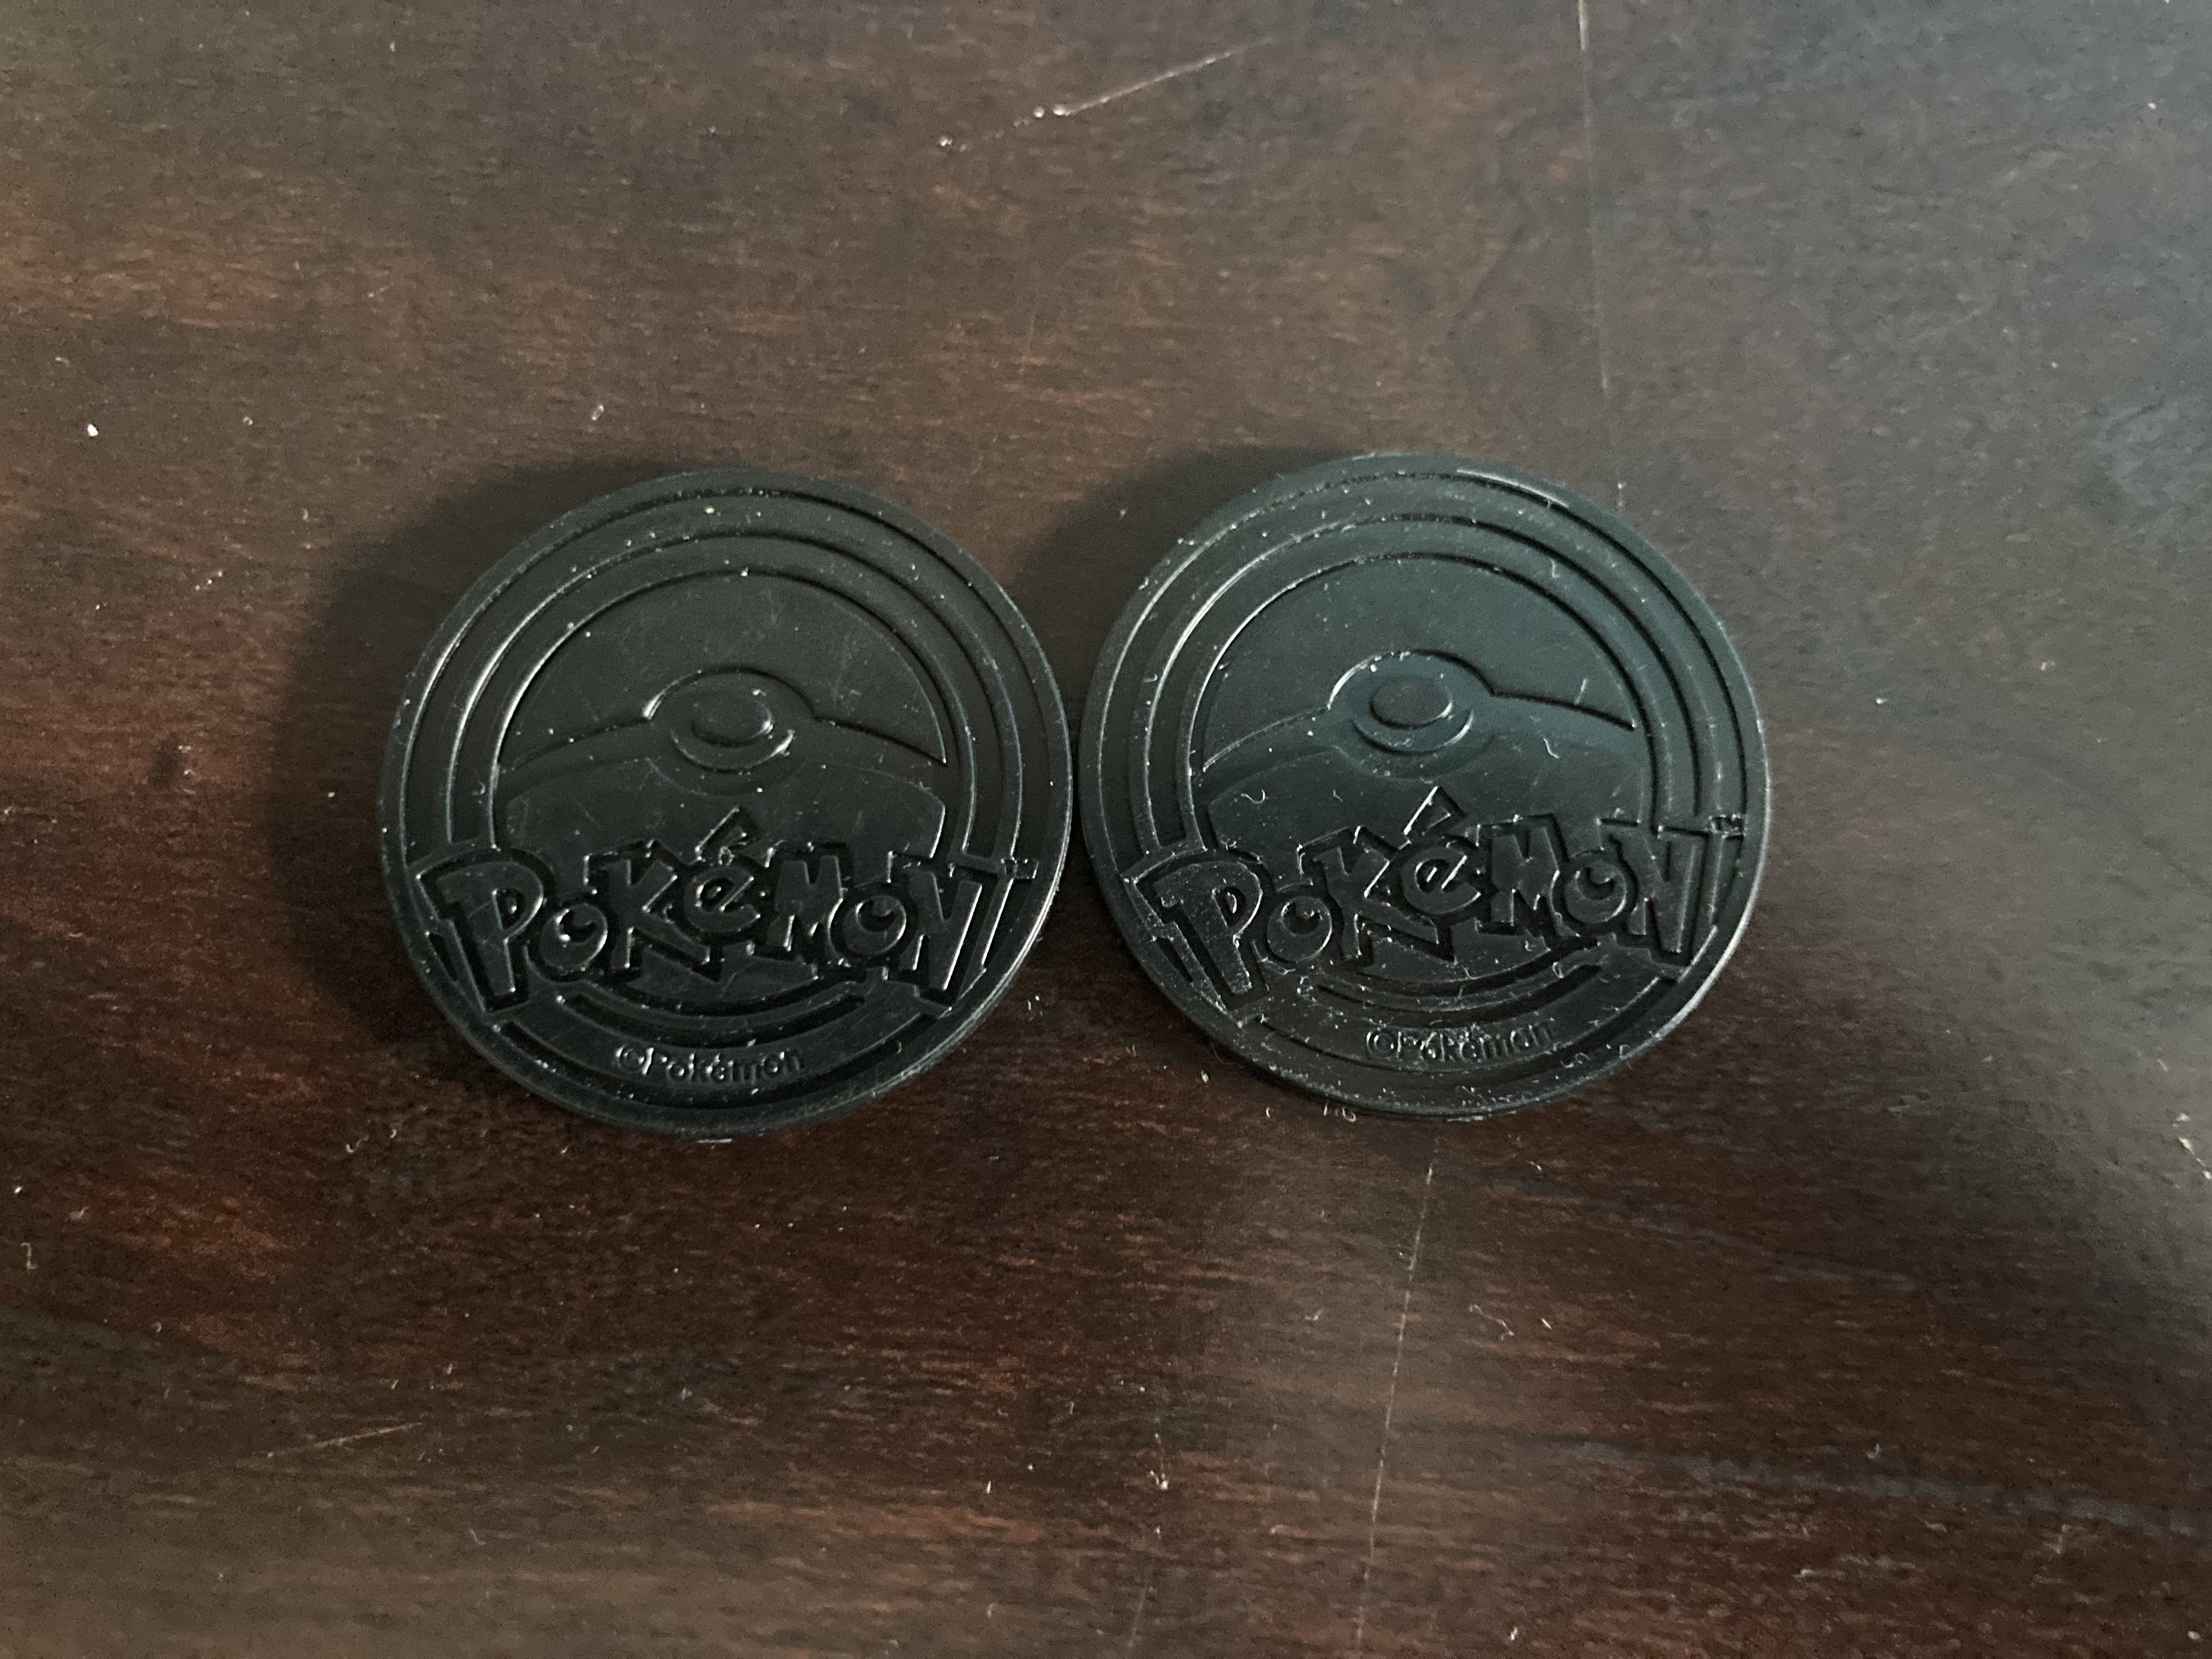 Primarina and Popplio plastic coins